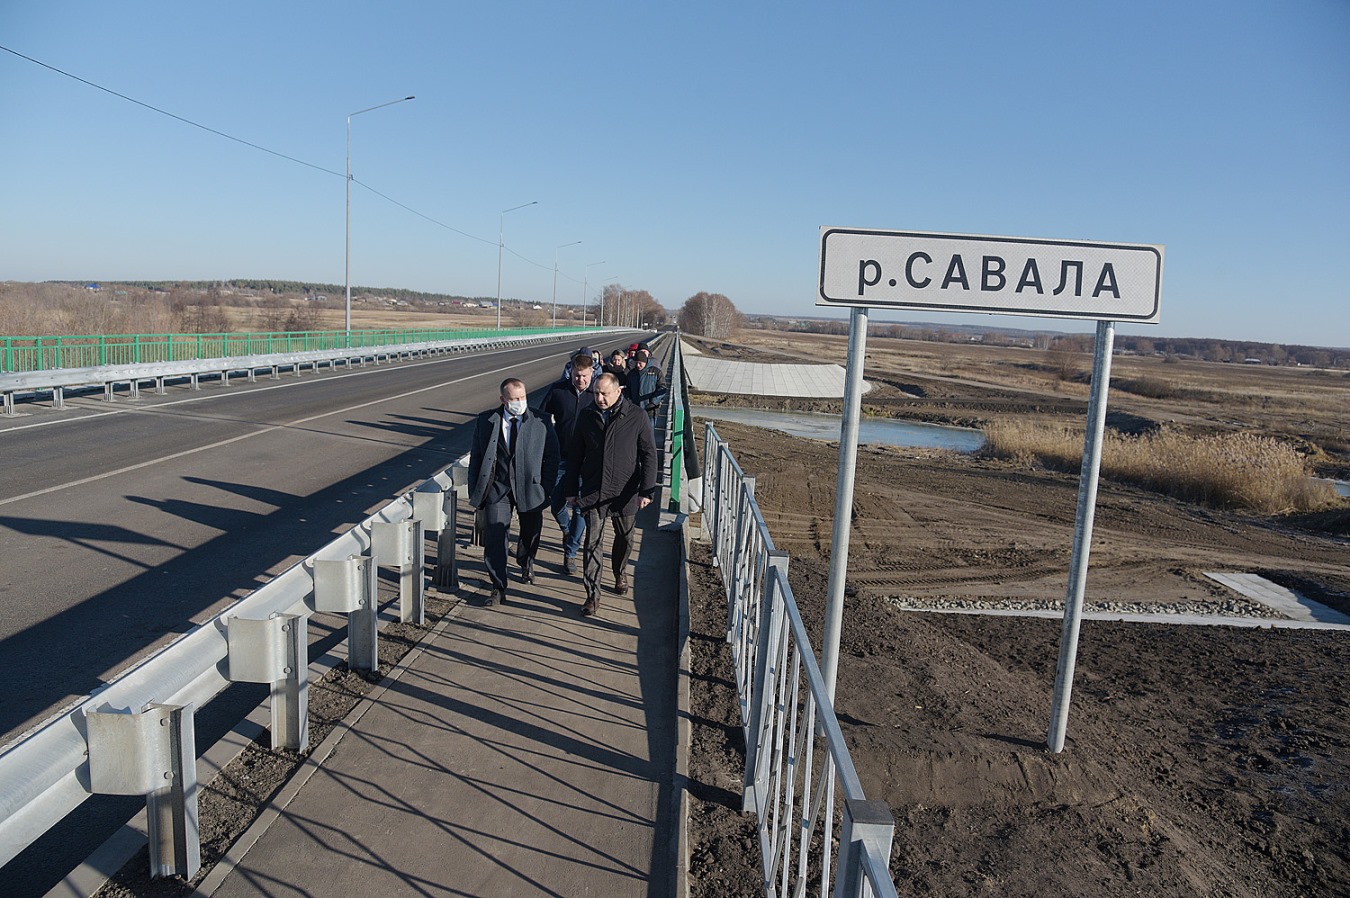 В Воронежской области построили новый мост через реку Савала